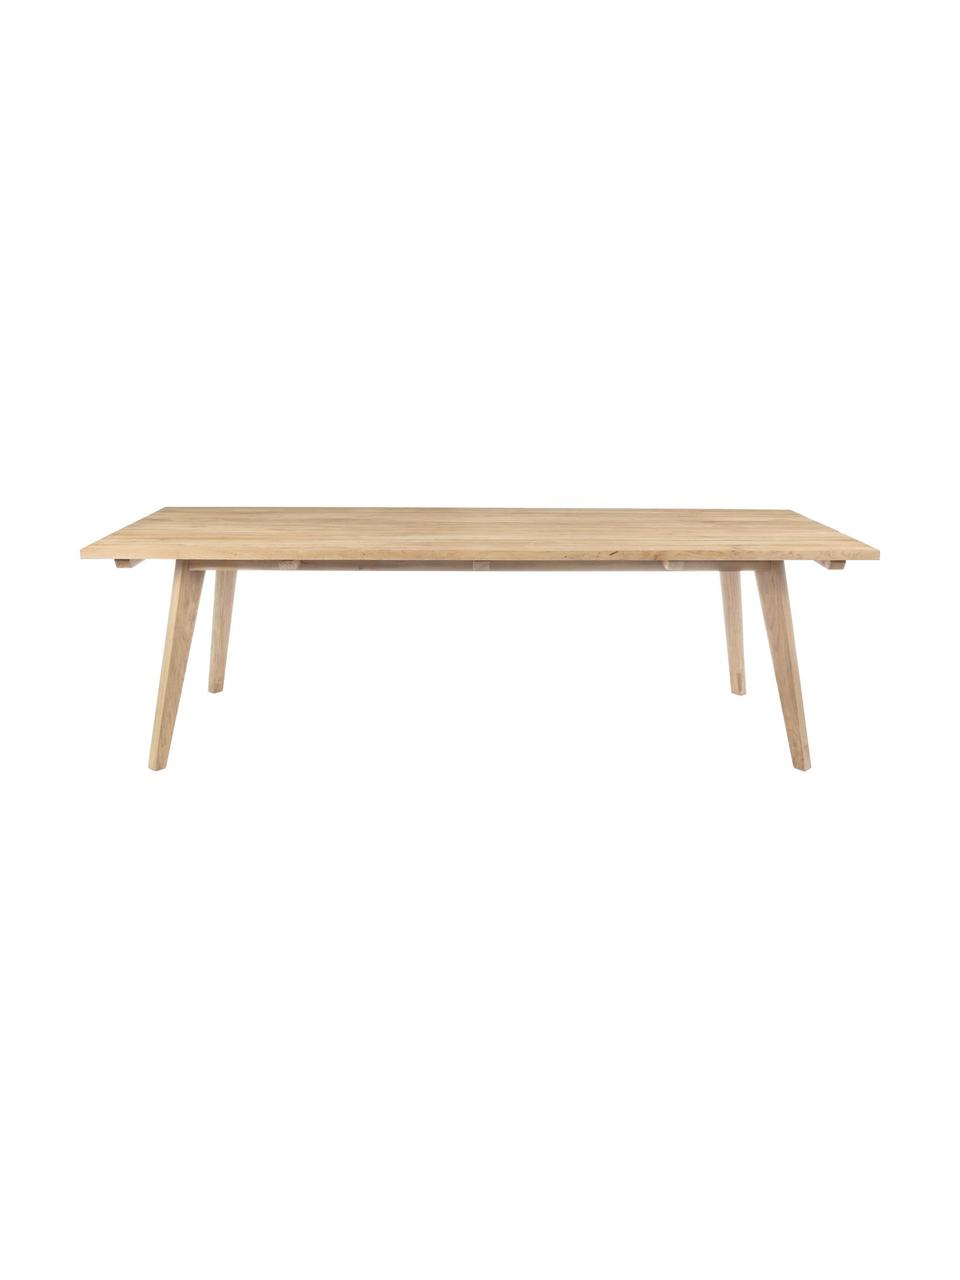 Zahradní stůl Kendari, Recyklované, neošetřené teakové dřevo
Certifikace FSC, Teakové dřevo, Š 260 cm, H 100 cm